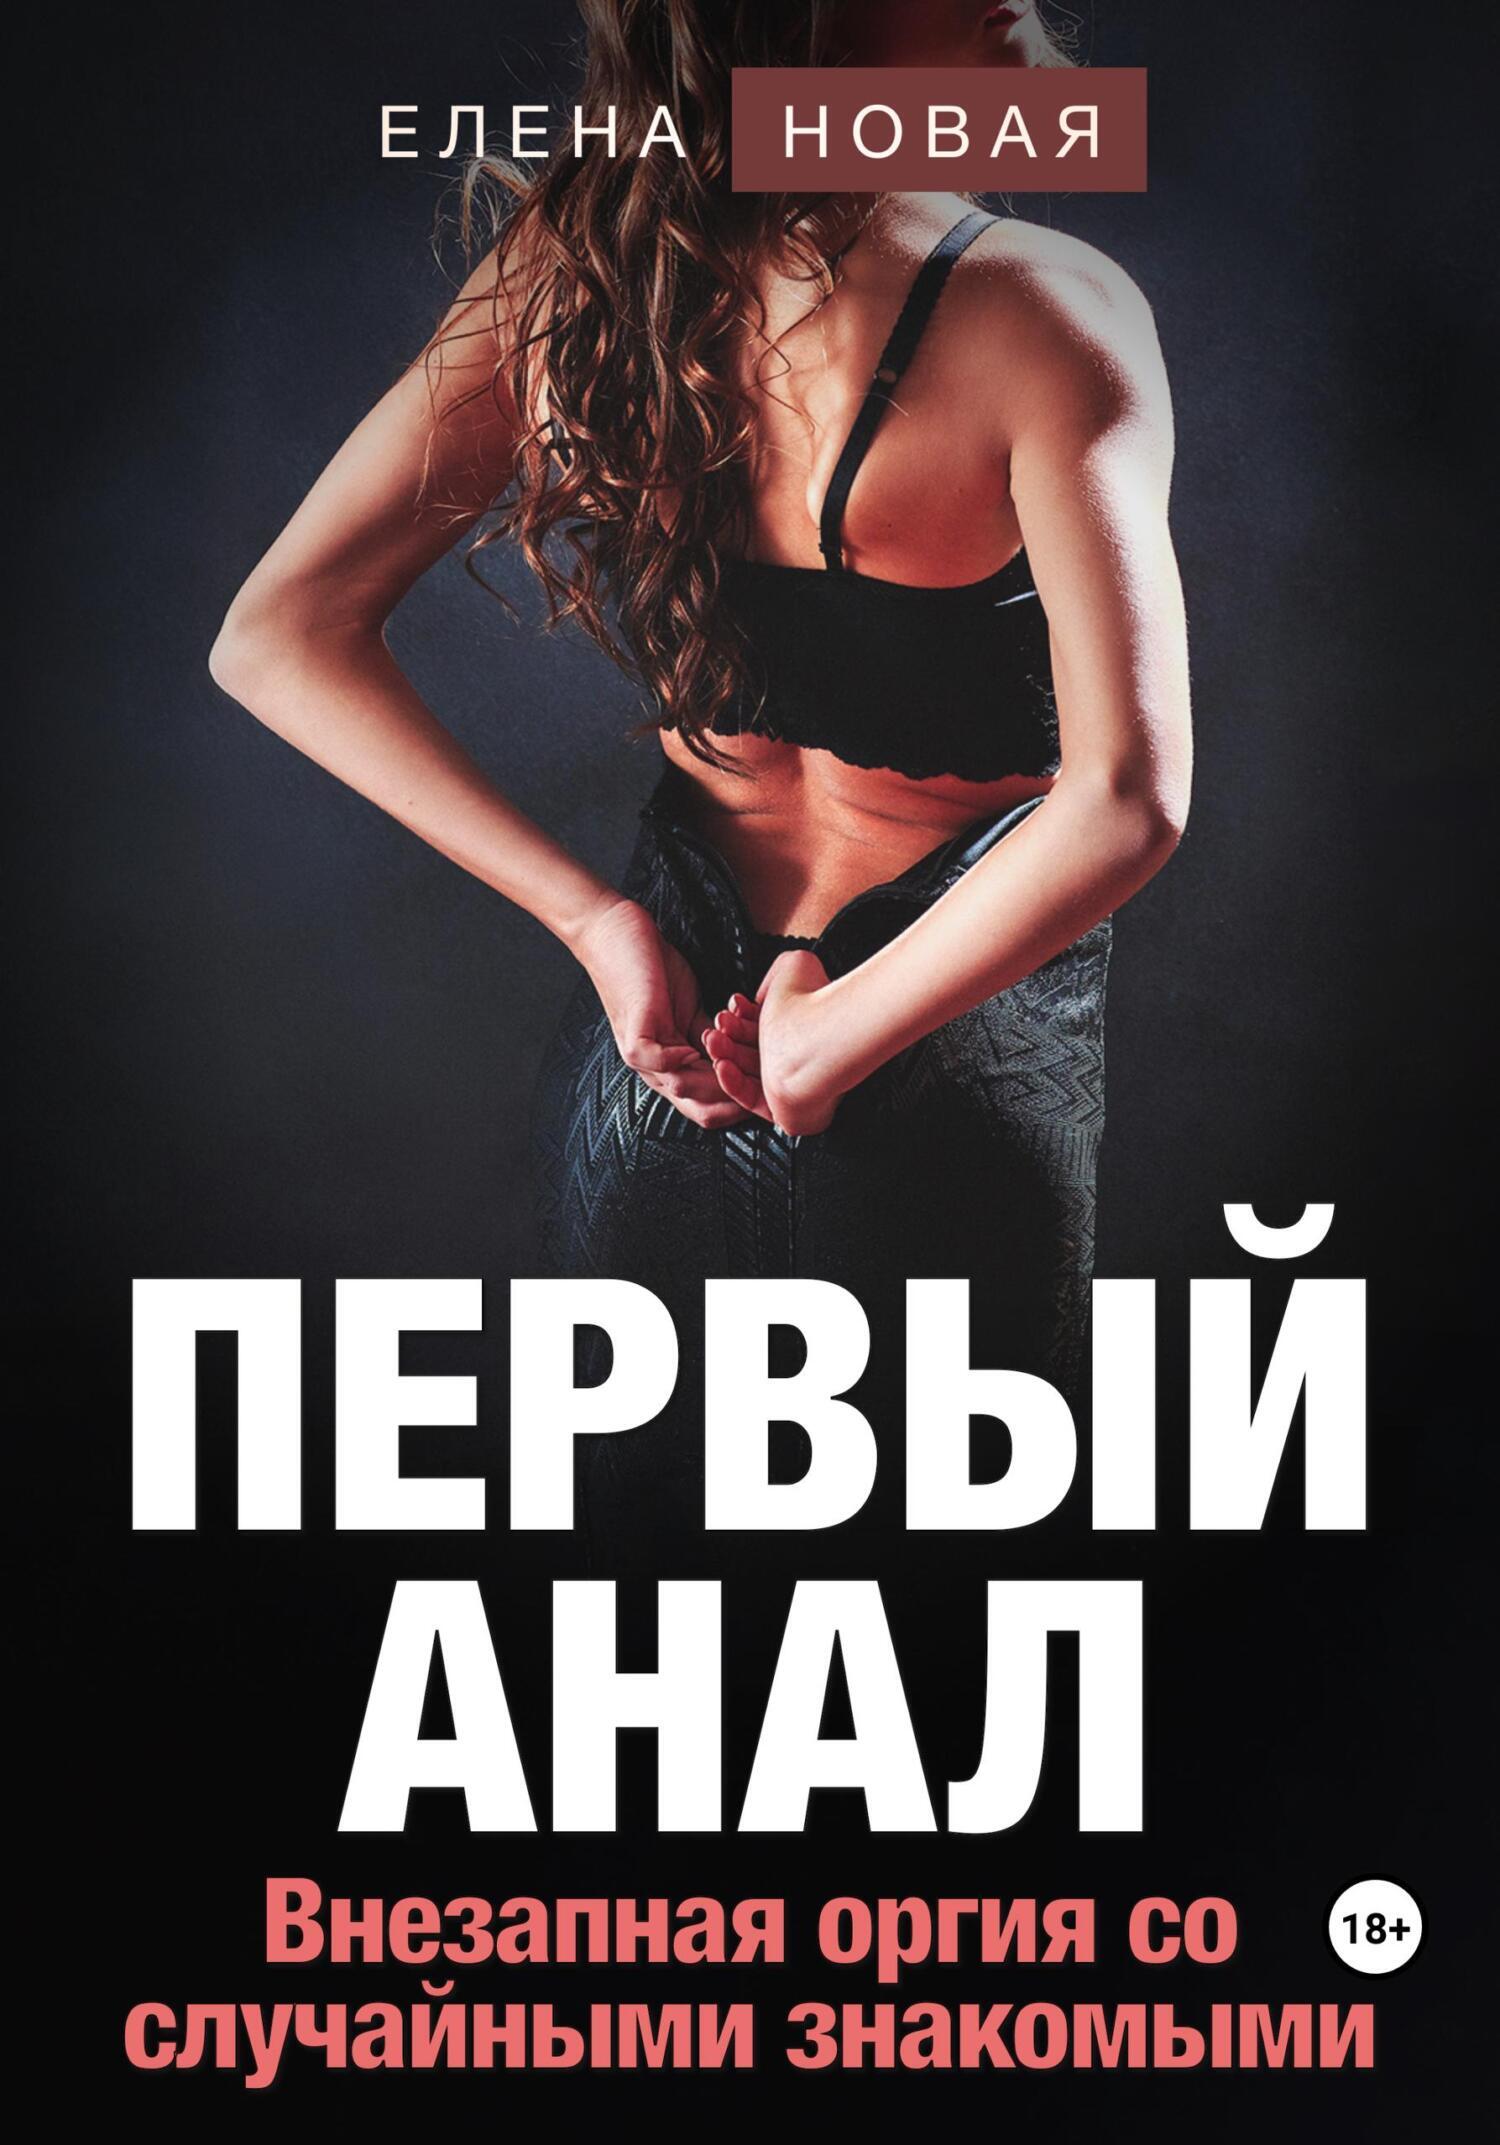 Первый анал, Елена Новая – скачать книгу fb2, epub, pdf на ЛитРес